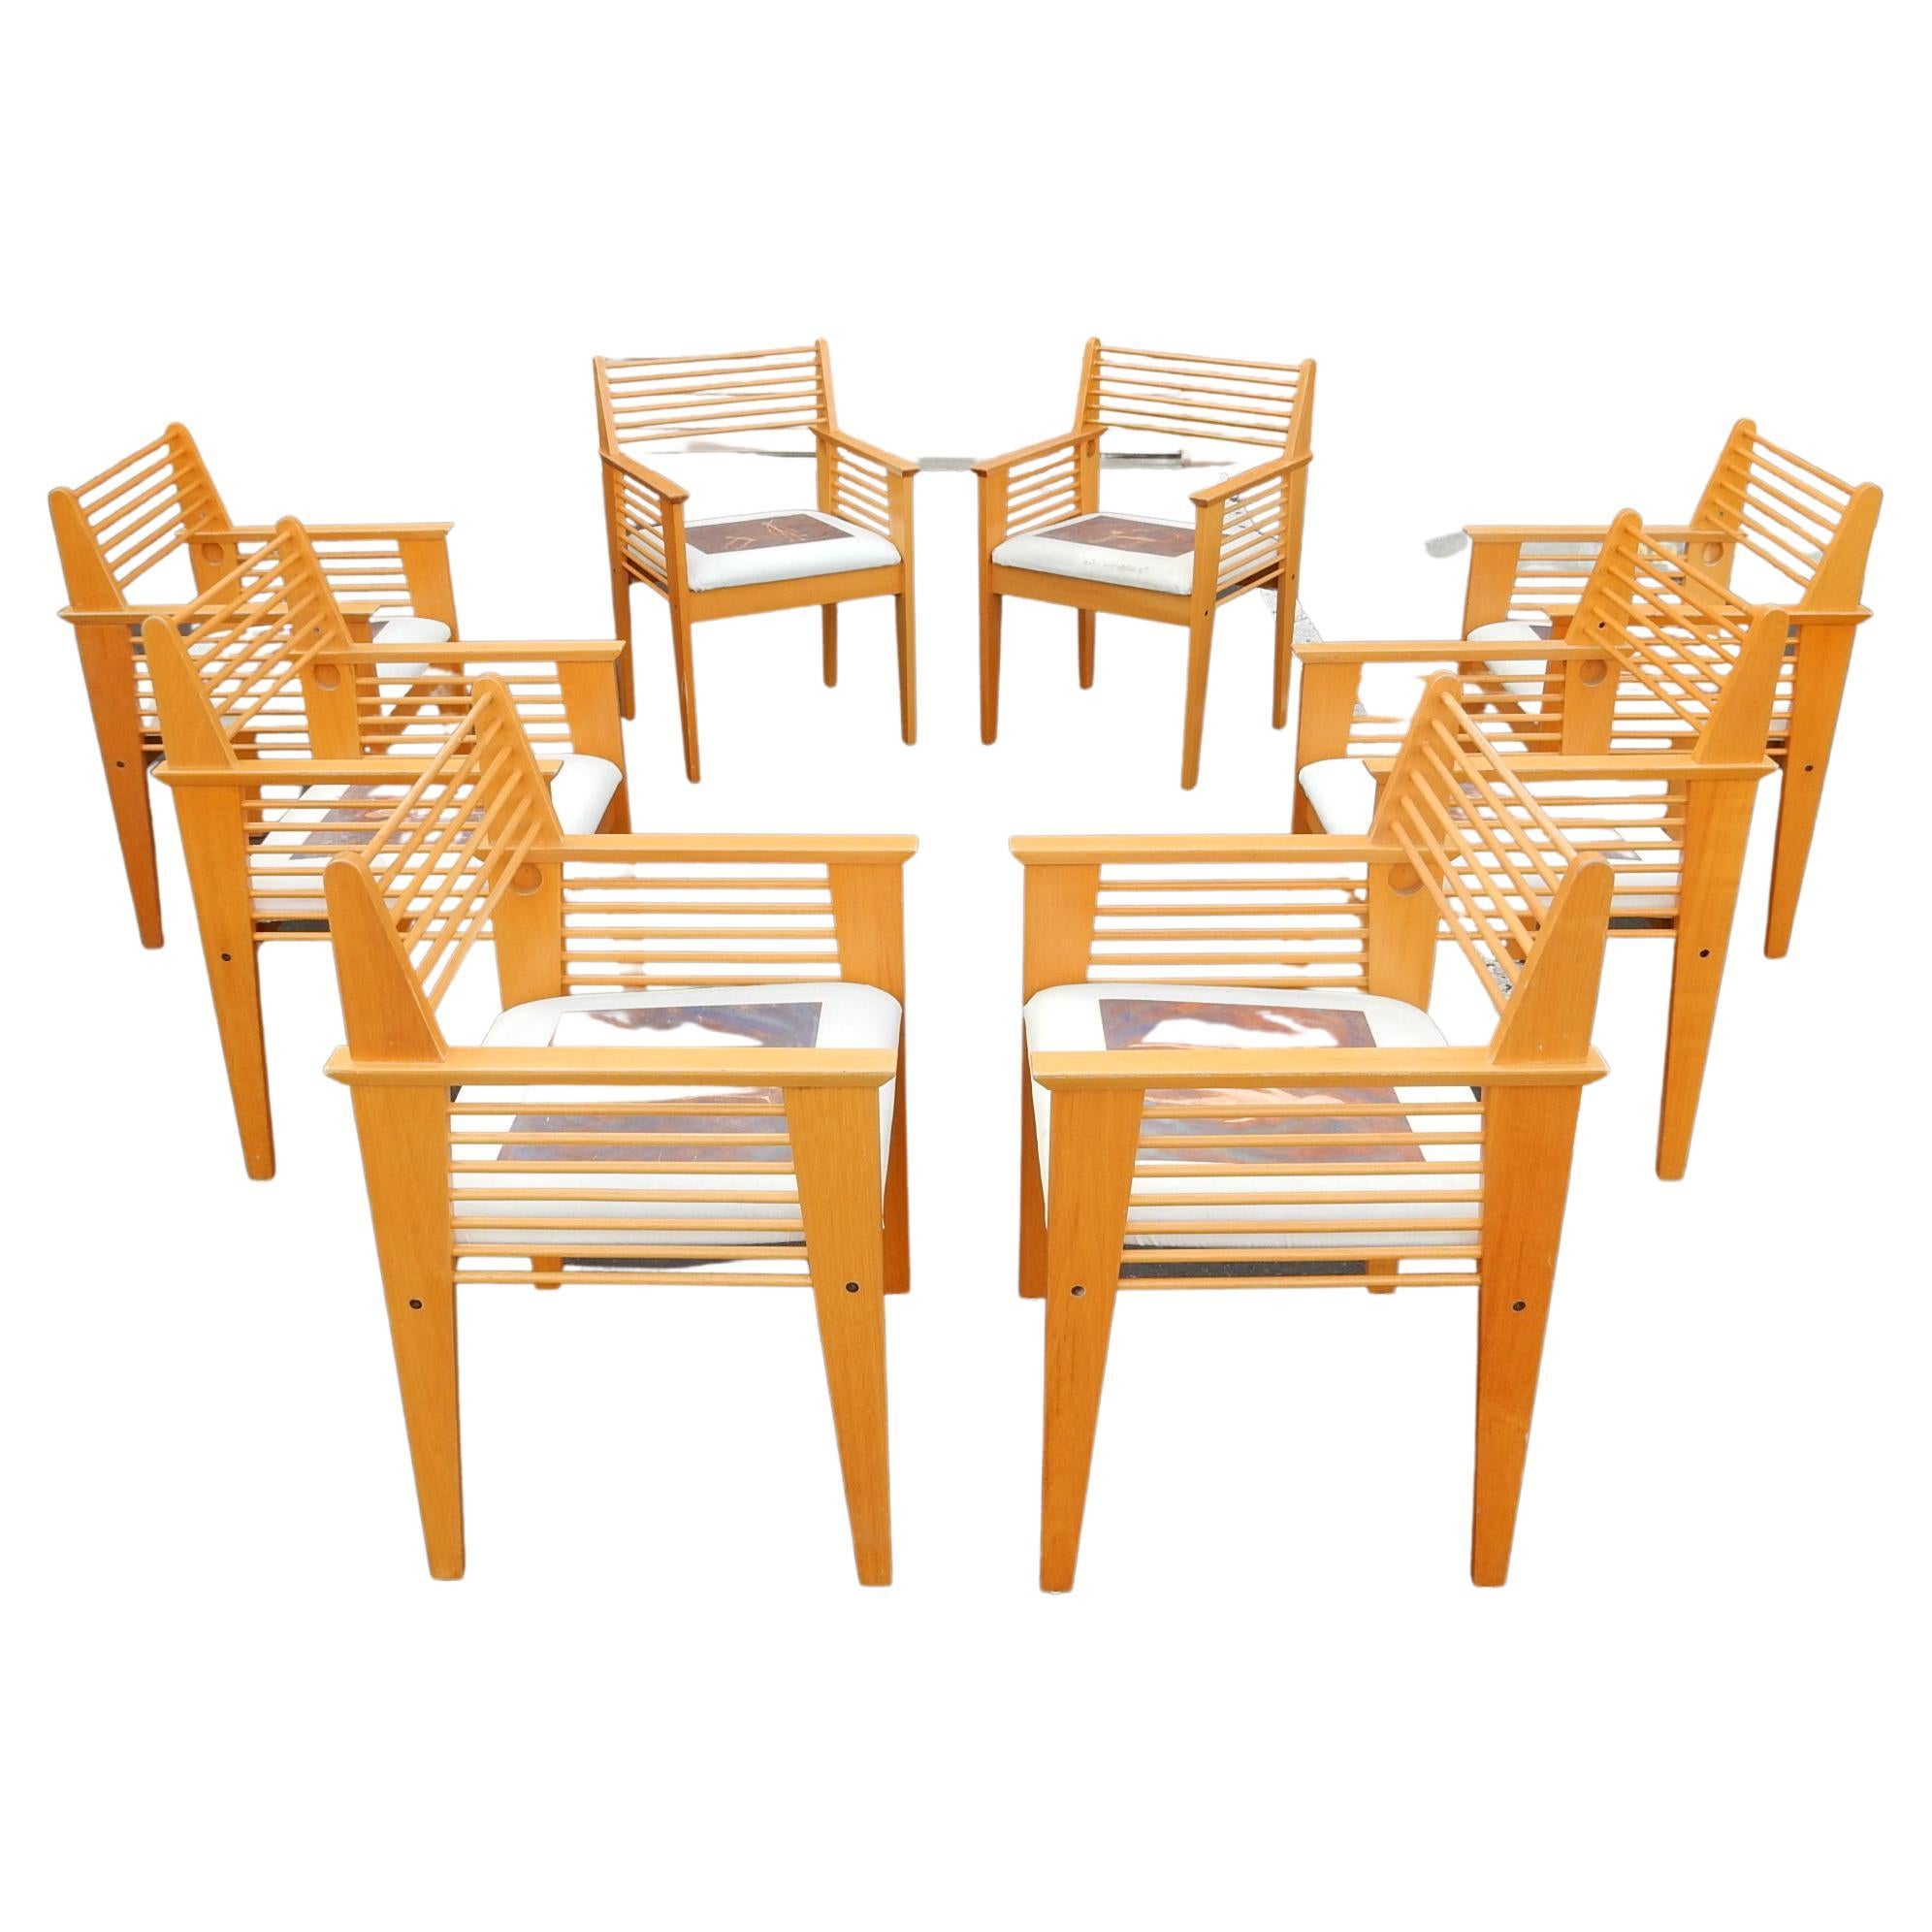 Ensemble de 8 chaises à fuseau d'époque post-moderne dans le style de Jean Prouve.
Esthétiquement agréable. Bois léger avec finition Shellac dorée.
Chaque housse de siège est une peinture figurative originale de style Giocometti réalisée par